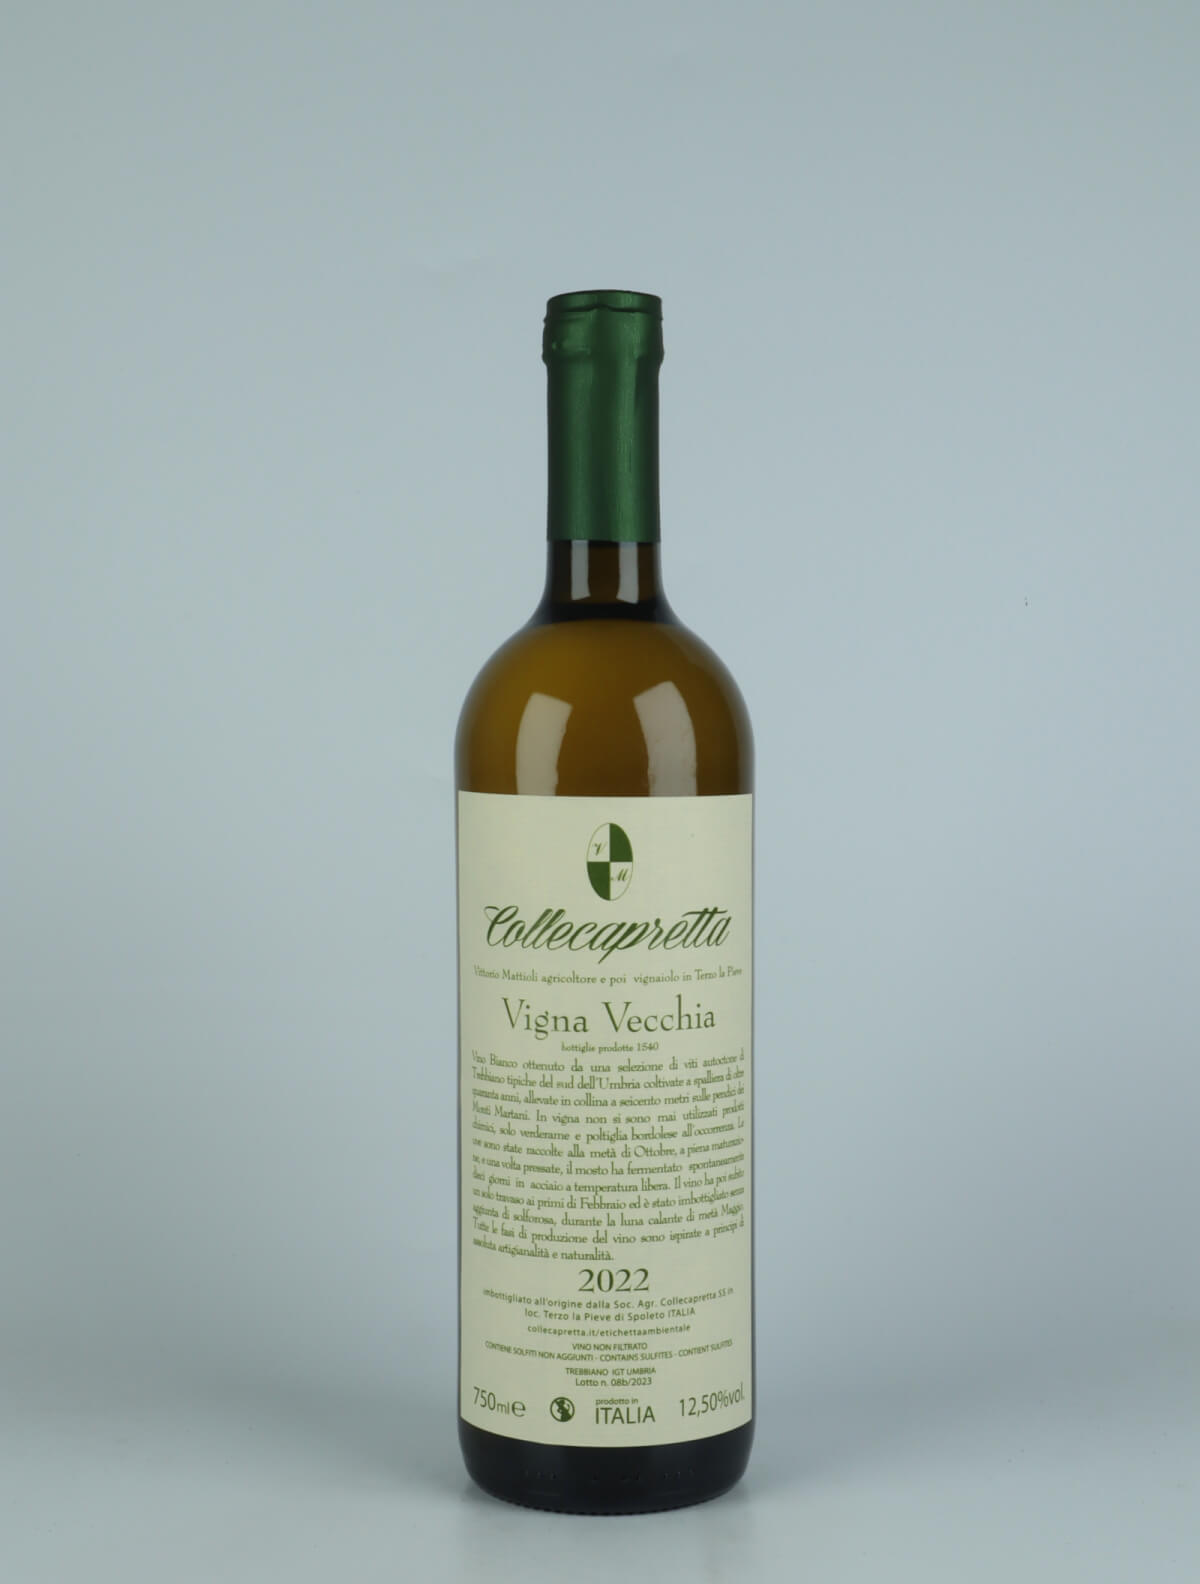 A bottle 2022 Vigna Vecchia Orange wine from Collecapretta, Umbria in Italy